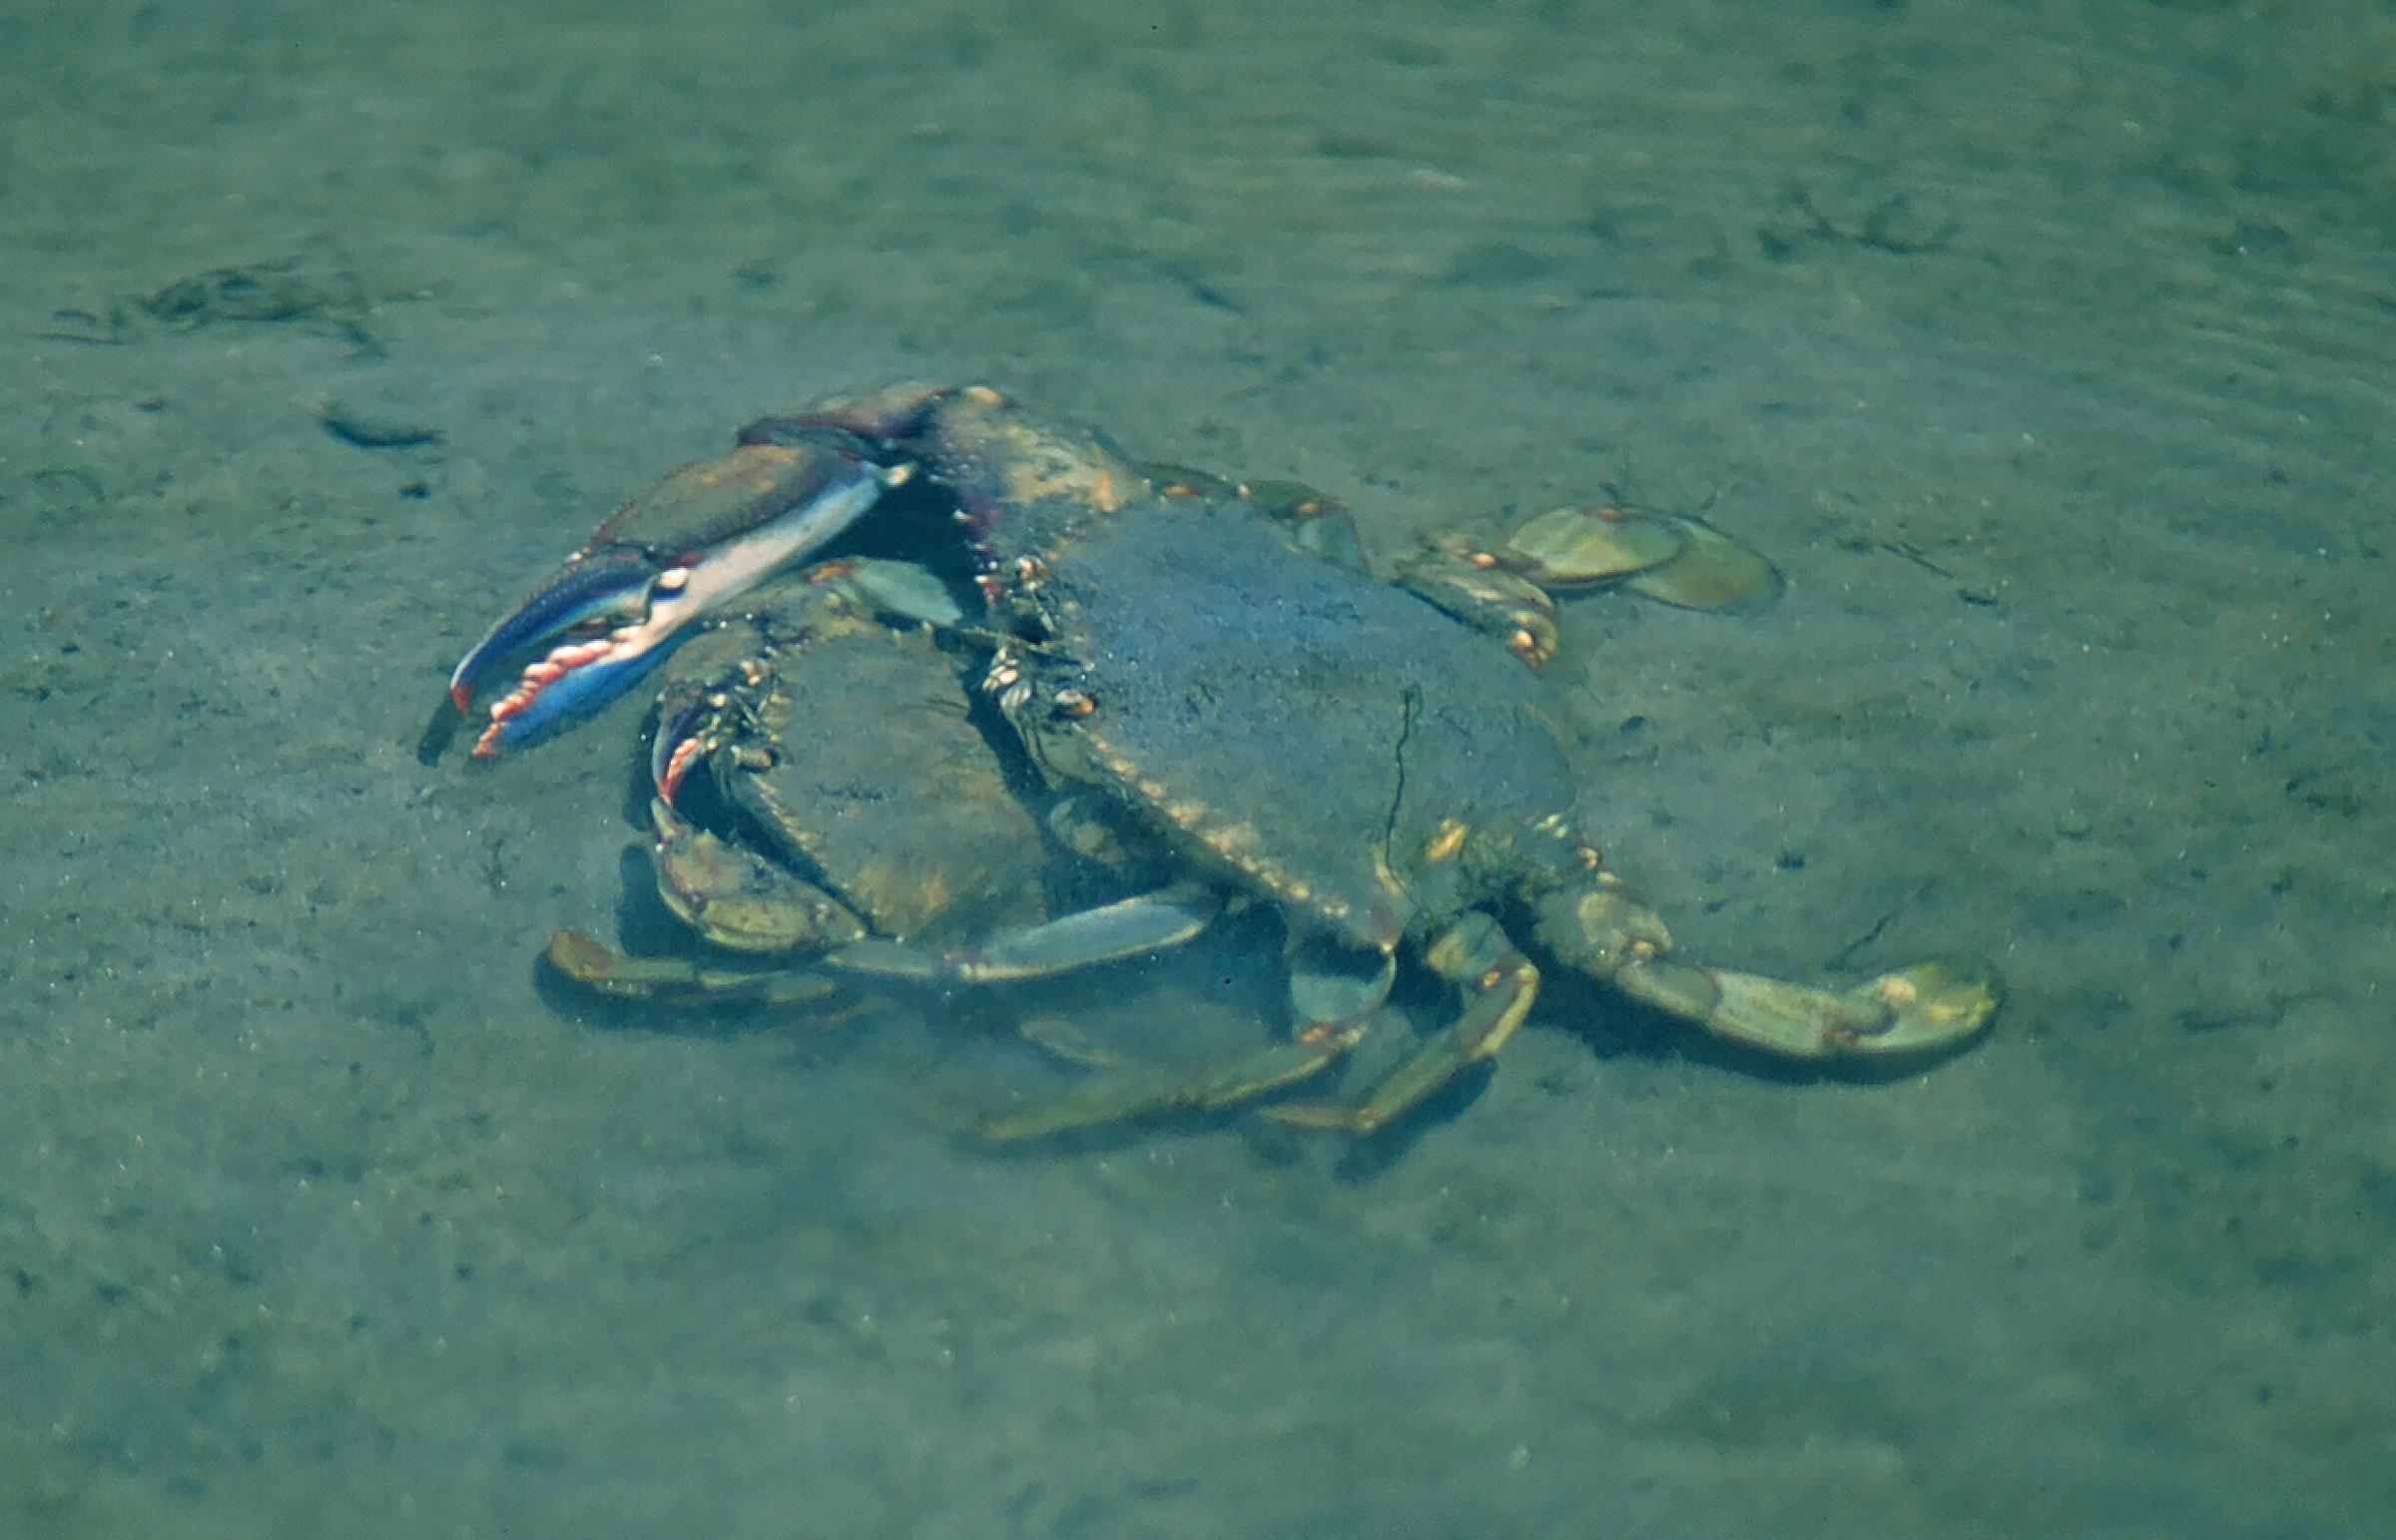 Arched Swimming Crab (Callinectes arcuatus)